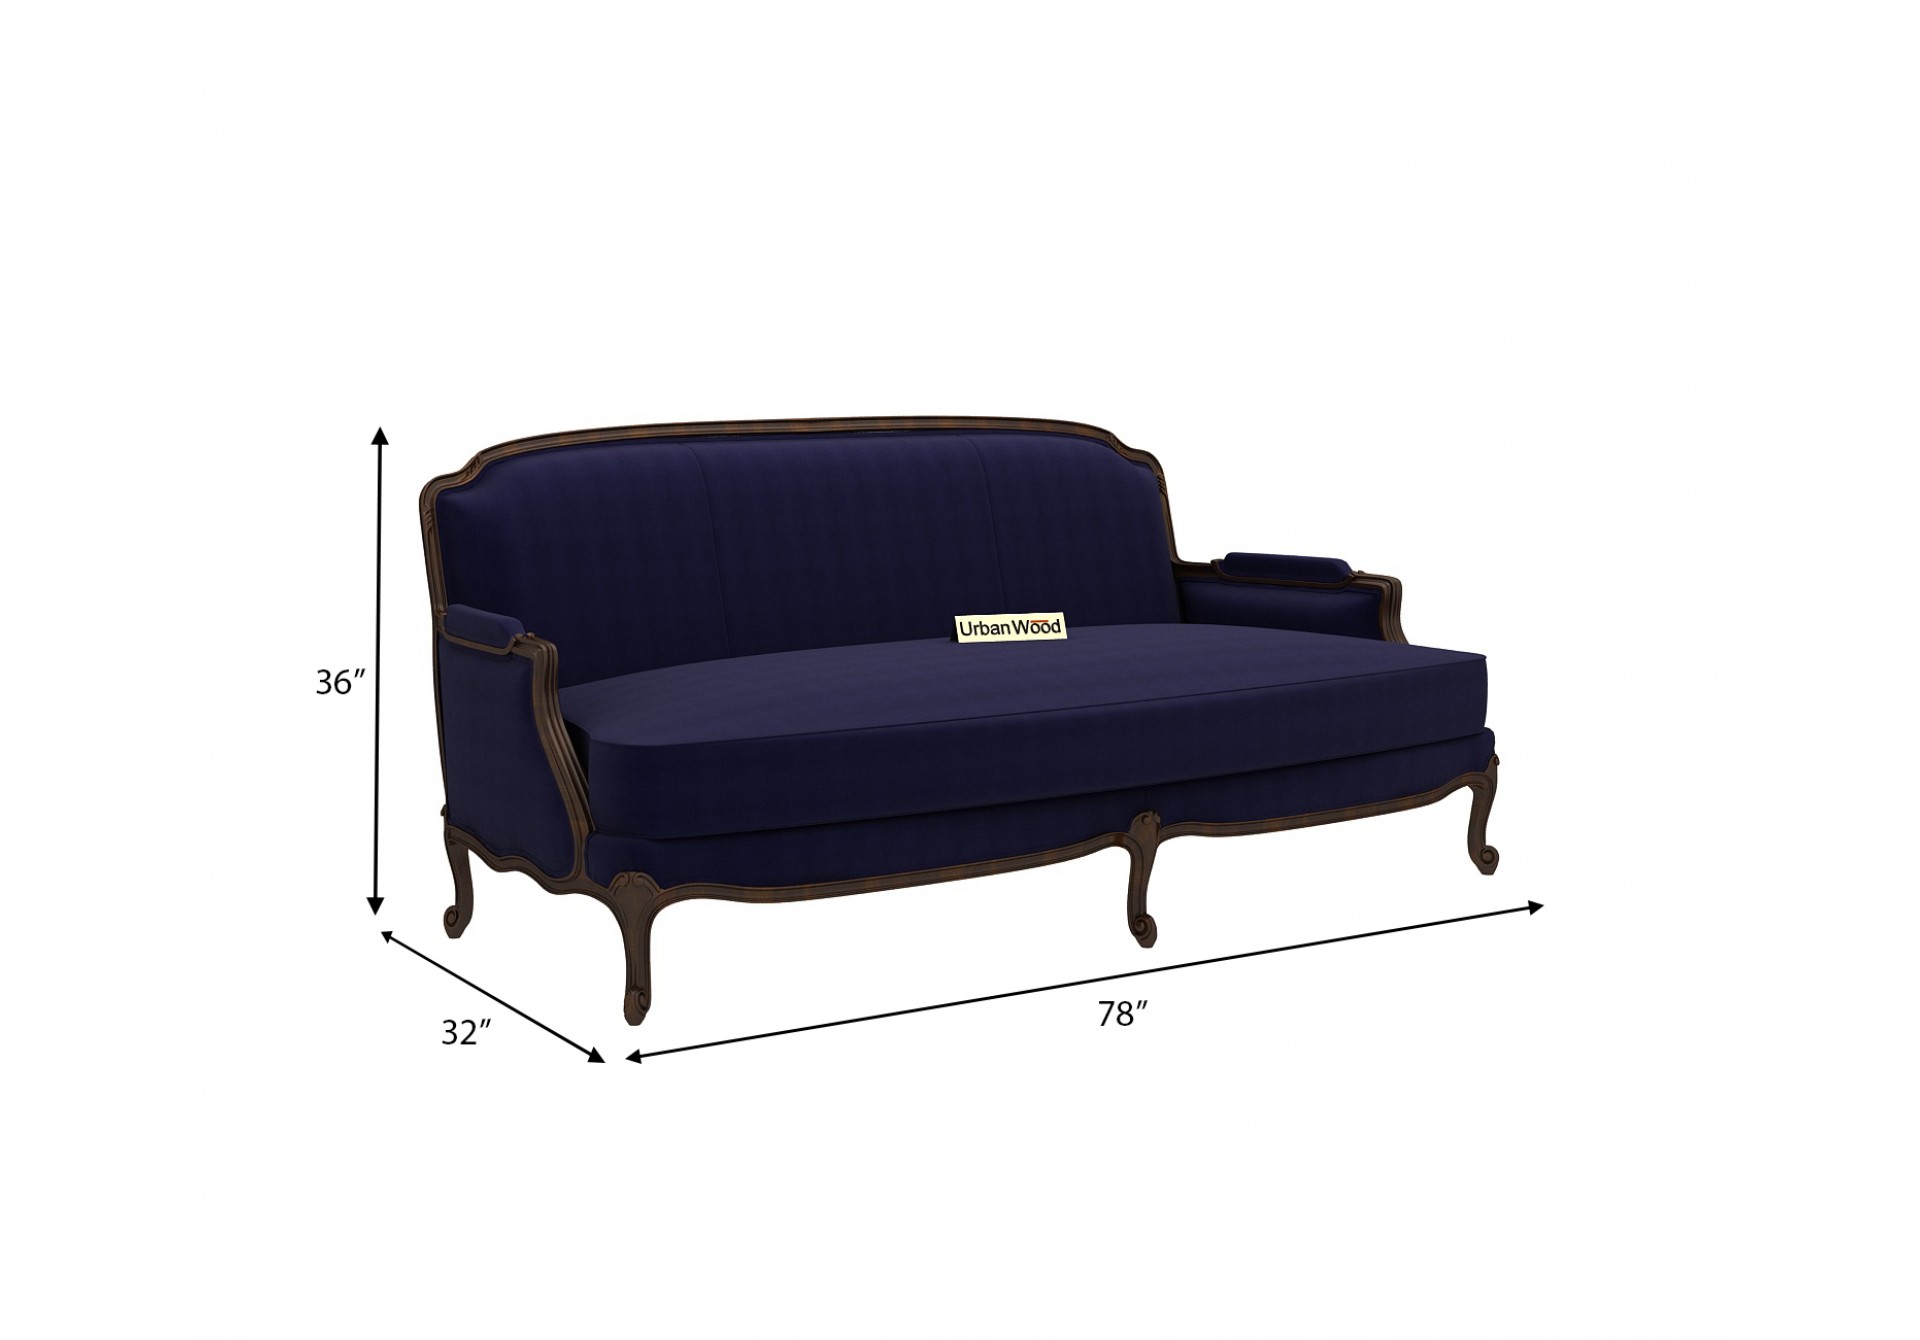 Abro 3 Seater Sofa (Cotton, Navy blue)